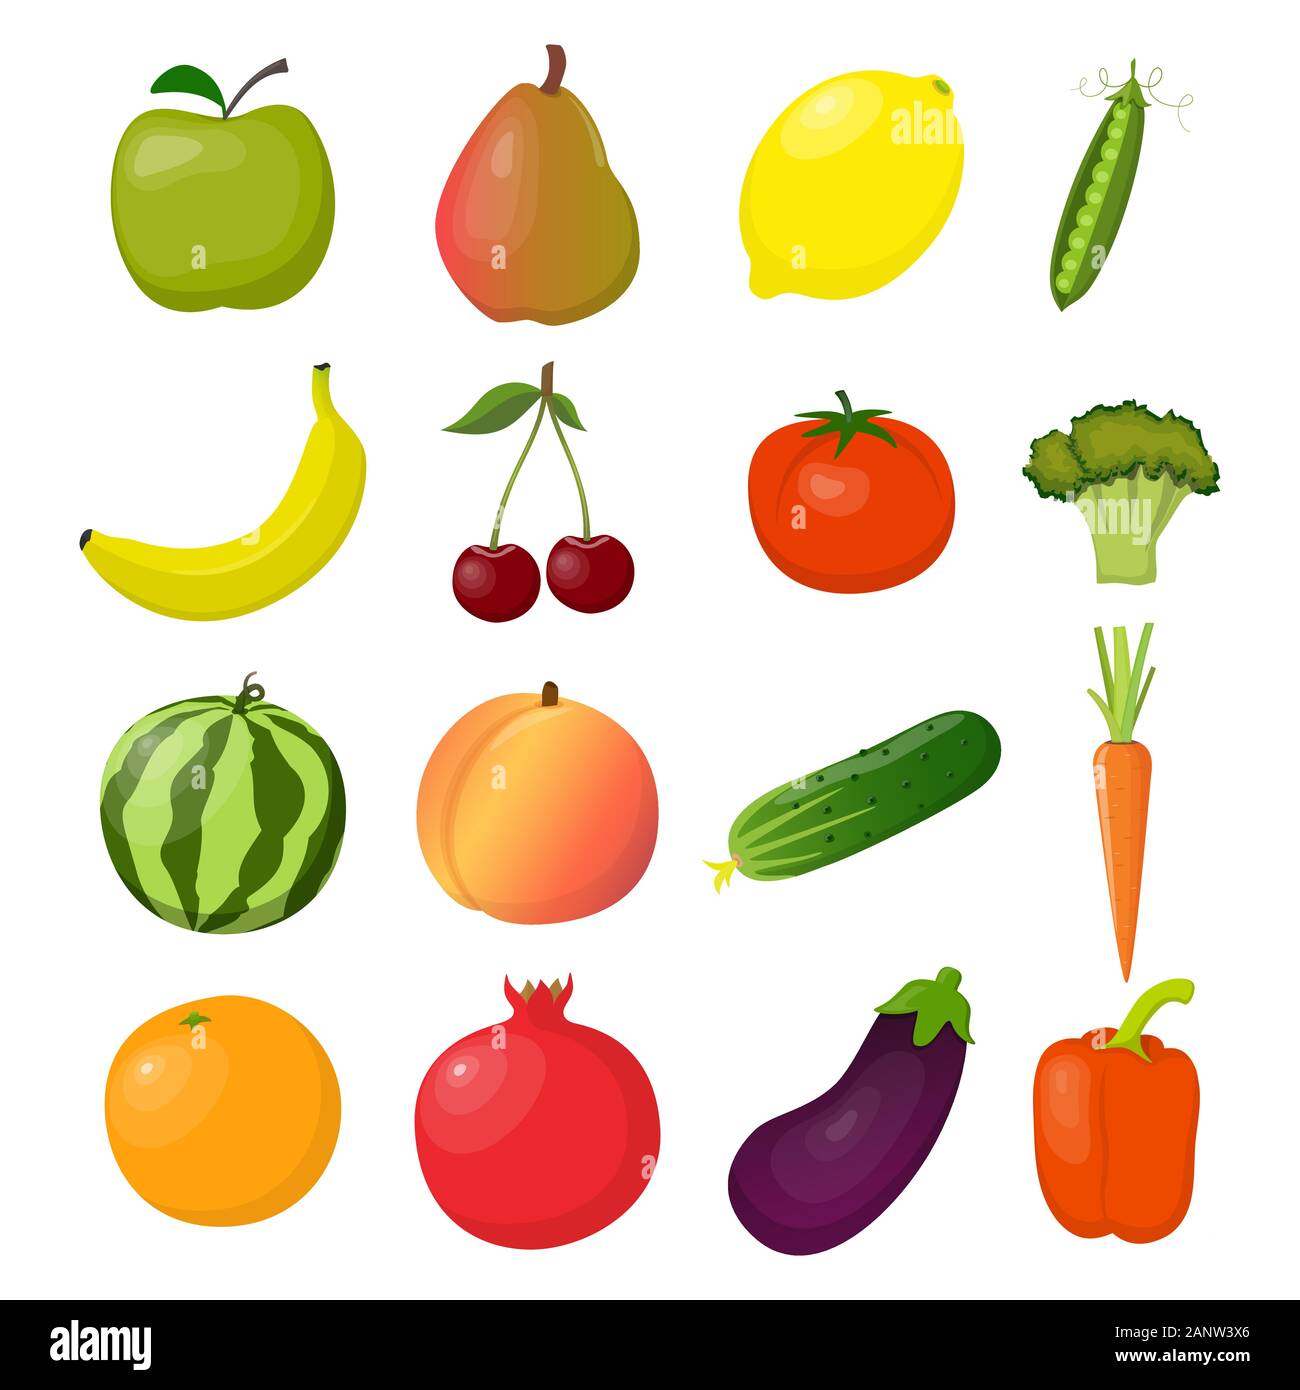 Satz von frischem Obst und Gemüse, hell und farbenfroh, isoliert auf Weiss. Vektor flachbild Abbildung Stock Vektor